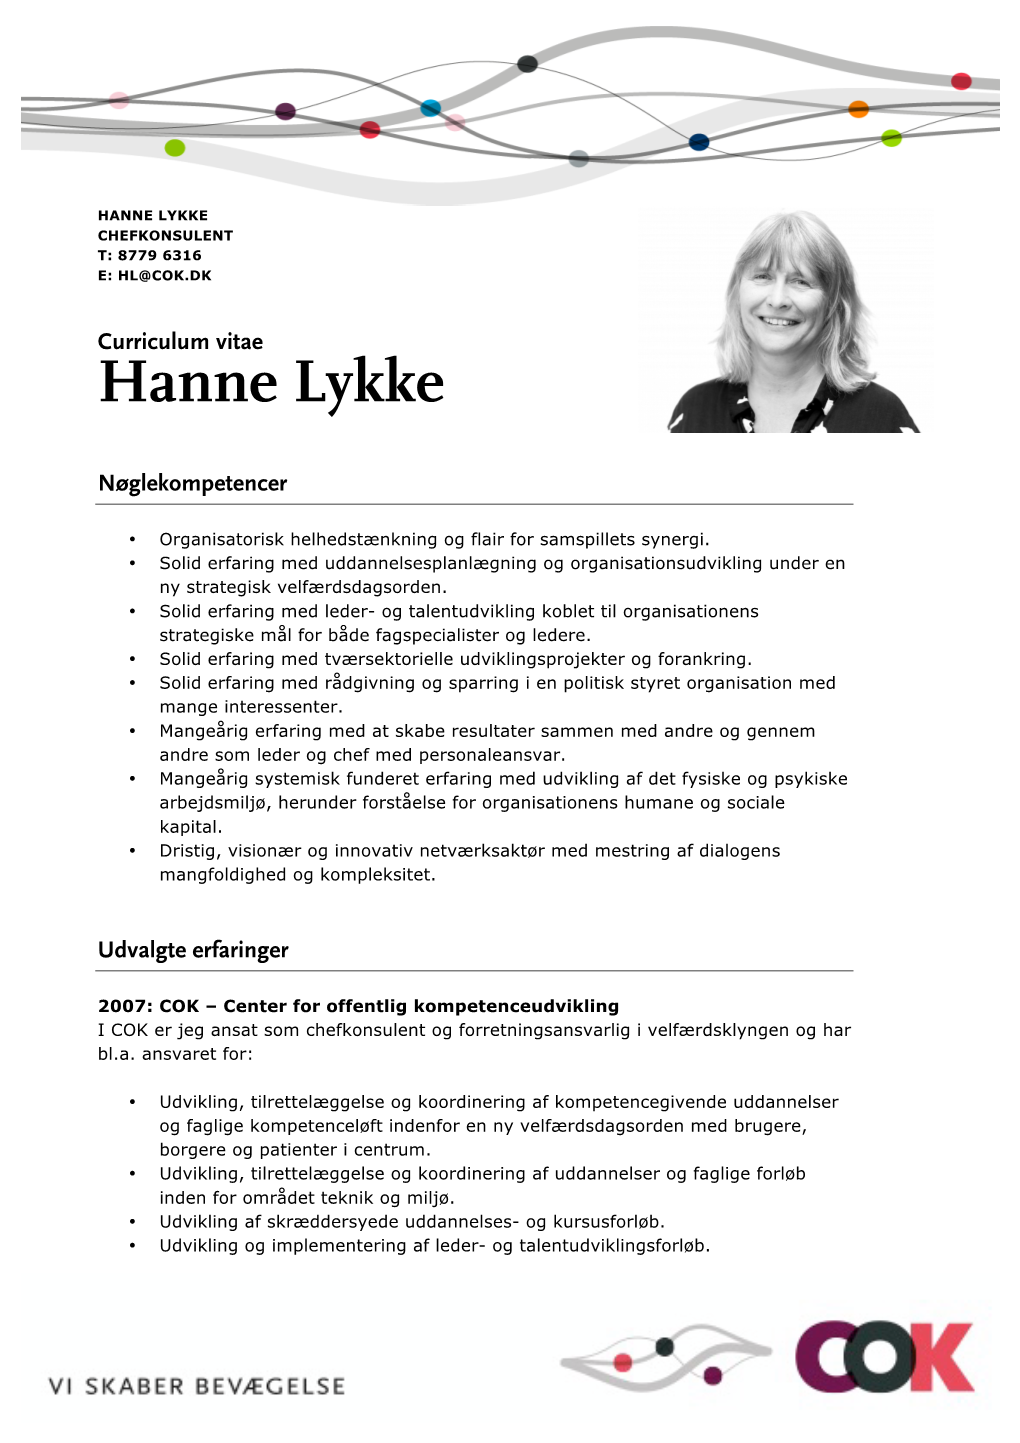 Hanne Lykke Chefkonsulent T: 8779 6316 E: Hl@Cok.Dk